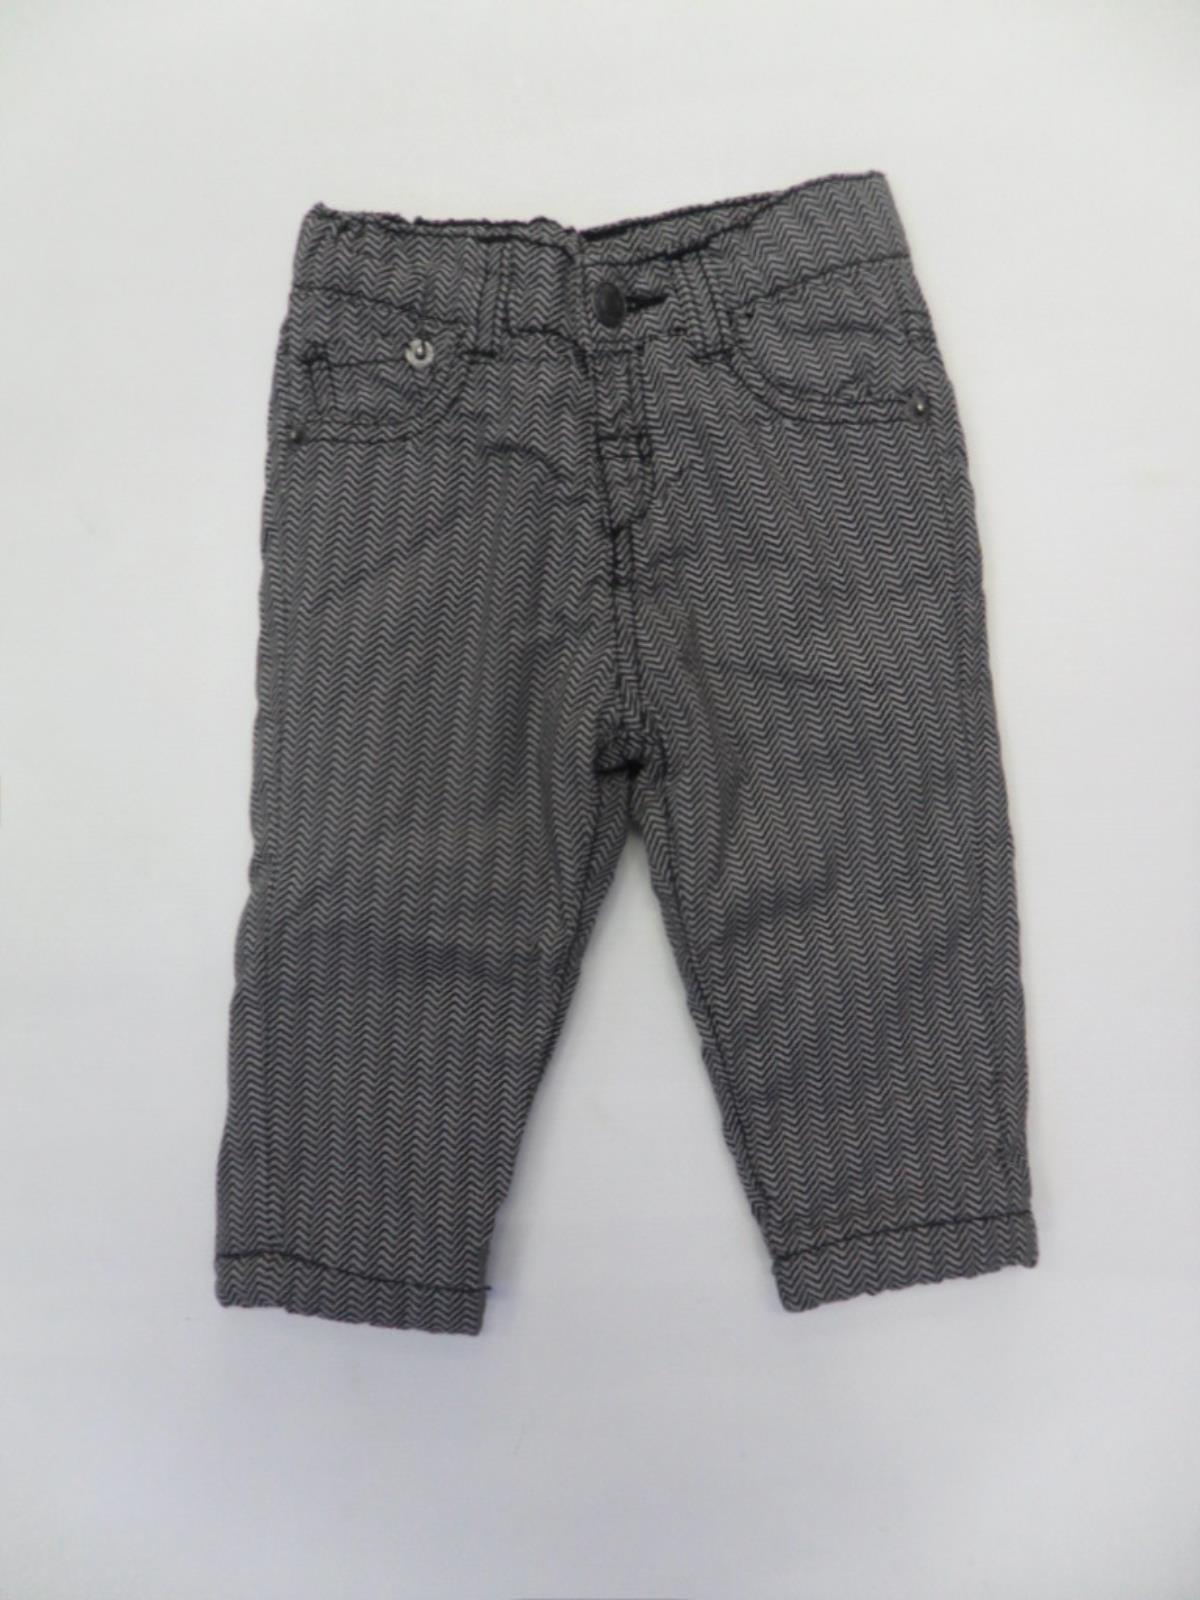 
  Pantalone della linea abbigliamento bambino Tuc Tuc in tessuto tecnico spigato.
  Modello cinq...